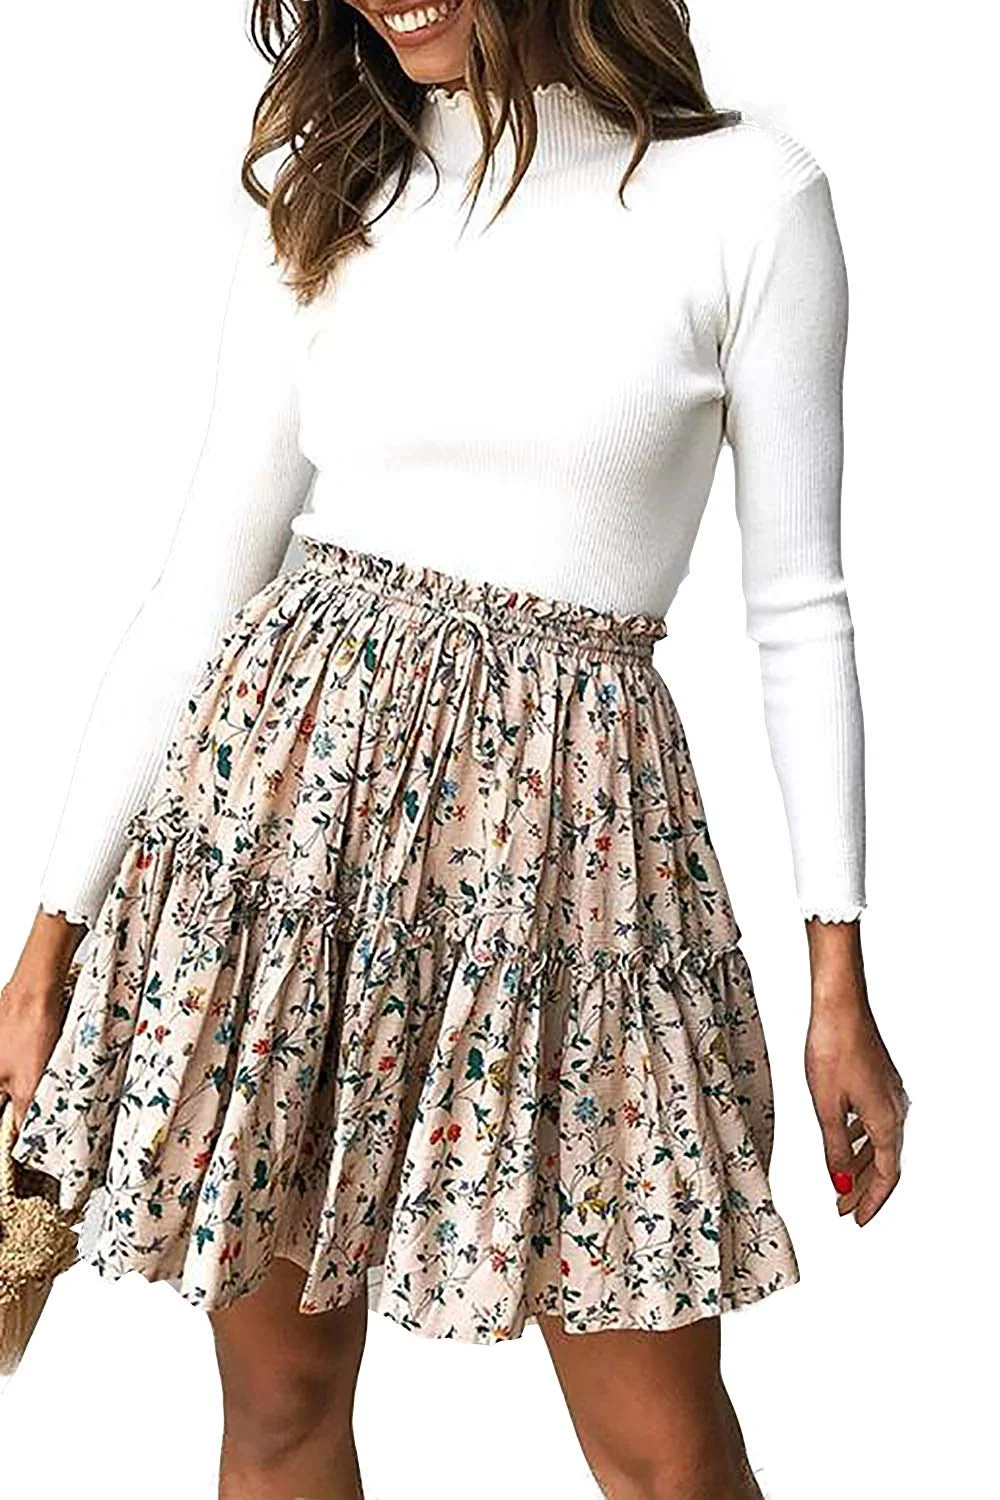 Women's Summer Cute High Waist Ruffle Skirt Floral Print Swing Beach Mini Skirt